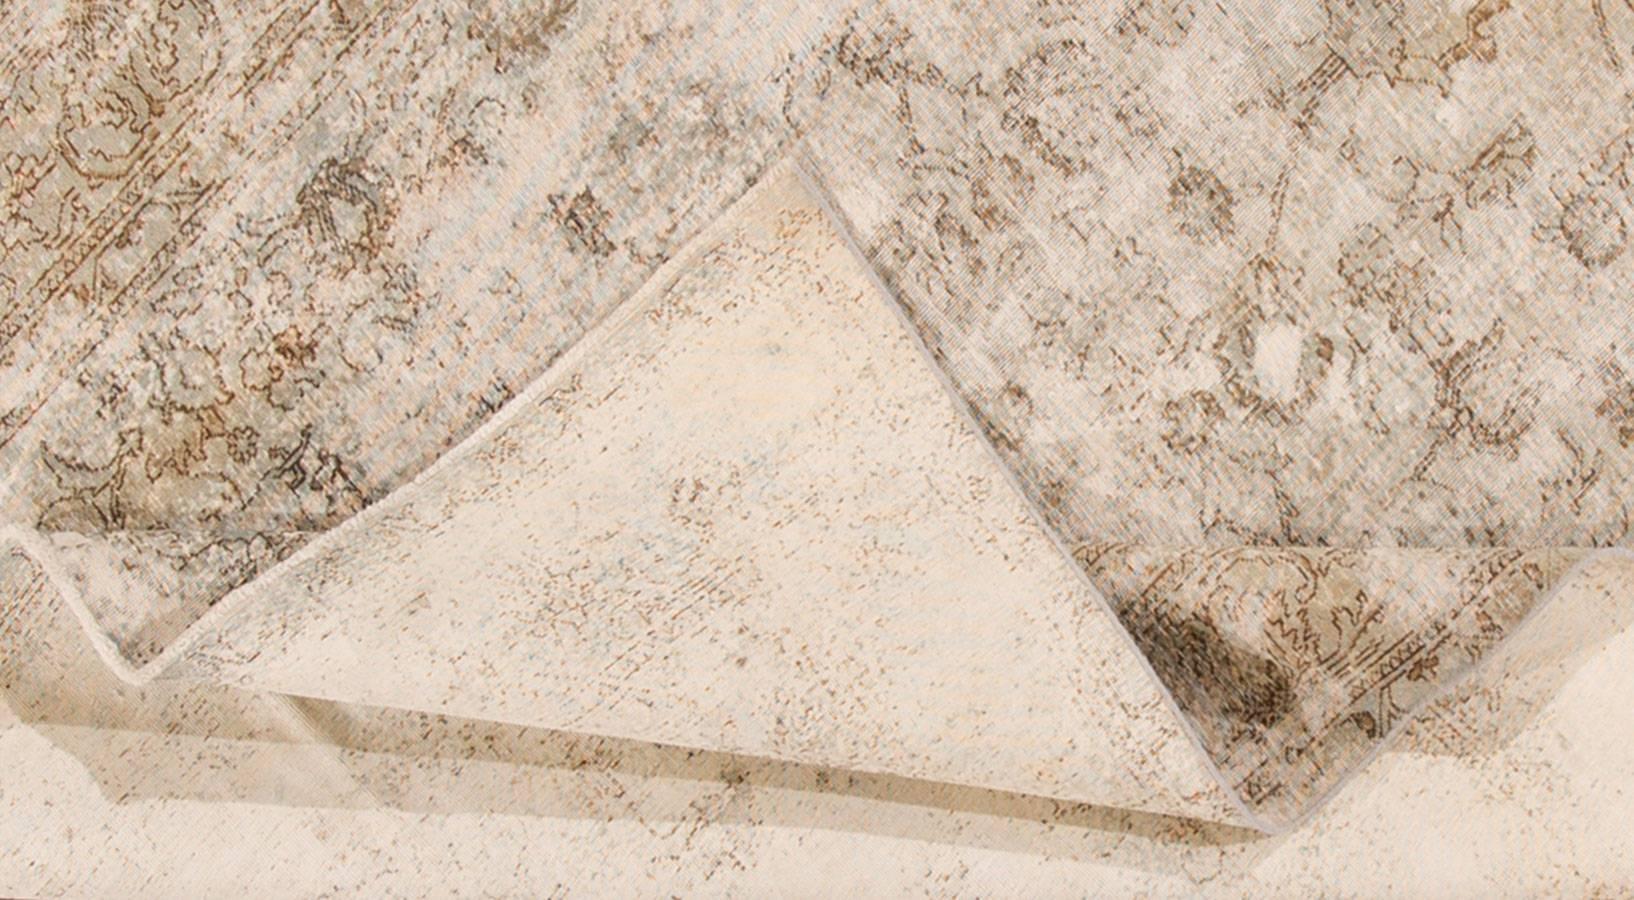 Alter persischer Kerman-Teppich. Dieses Stück hat ein elfenbeinfarbenes Feld und ein All-Over-Muster in dunklerem Grau, das wie gealtert aussieht. Maße: 7.01 x 10.05.